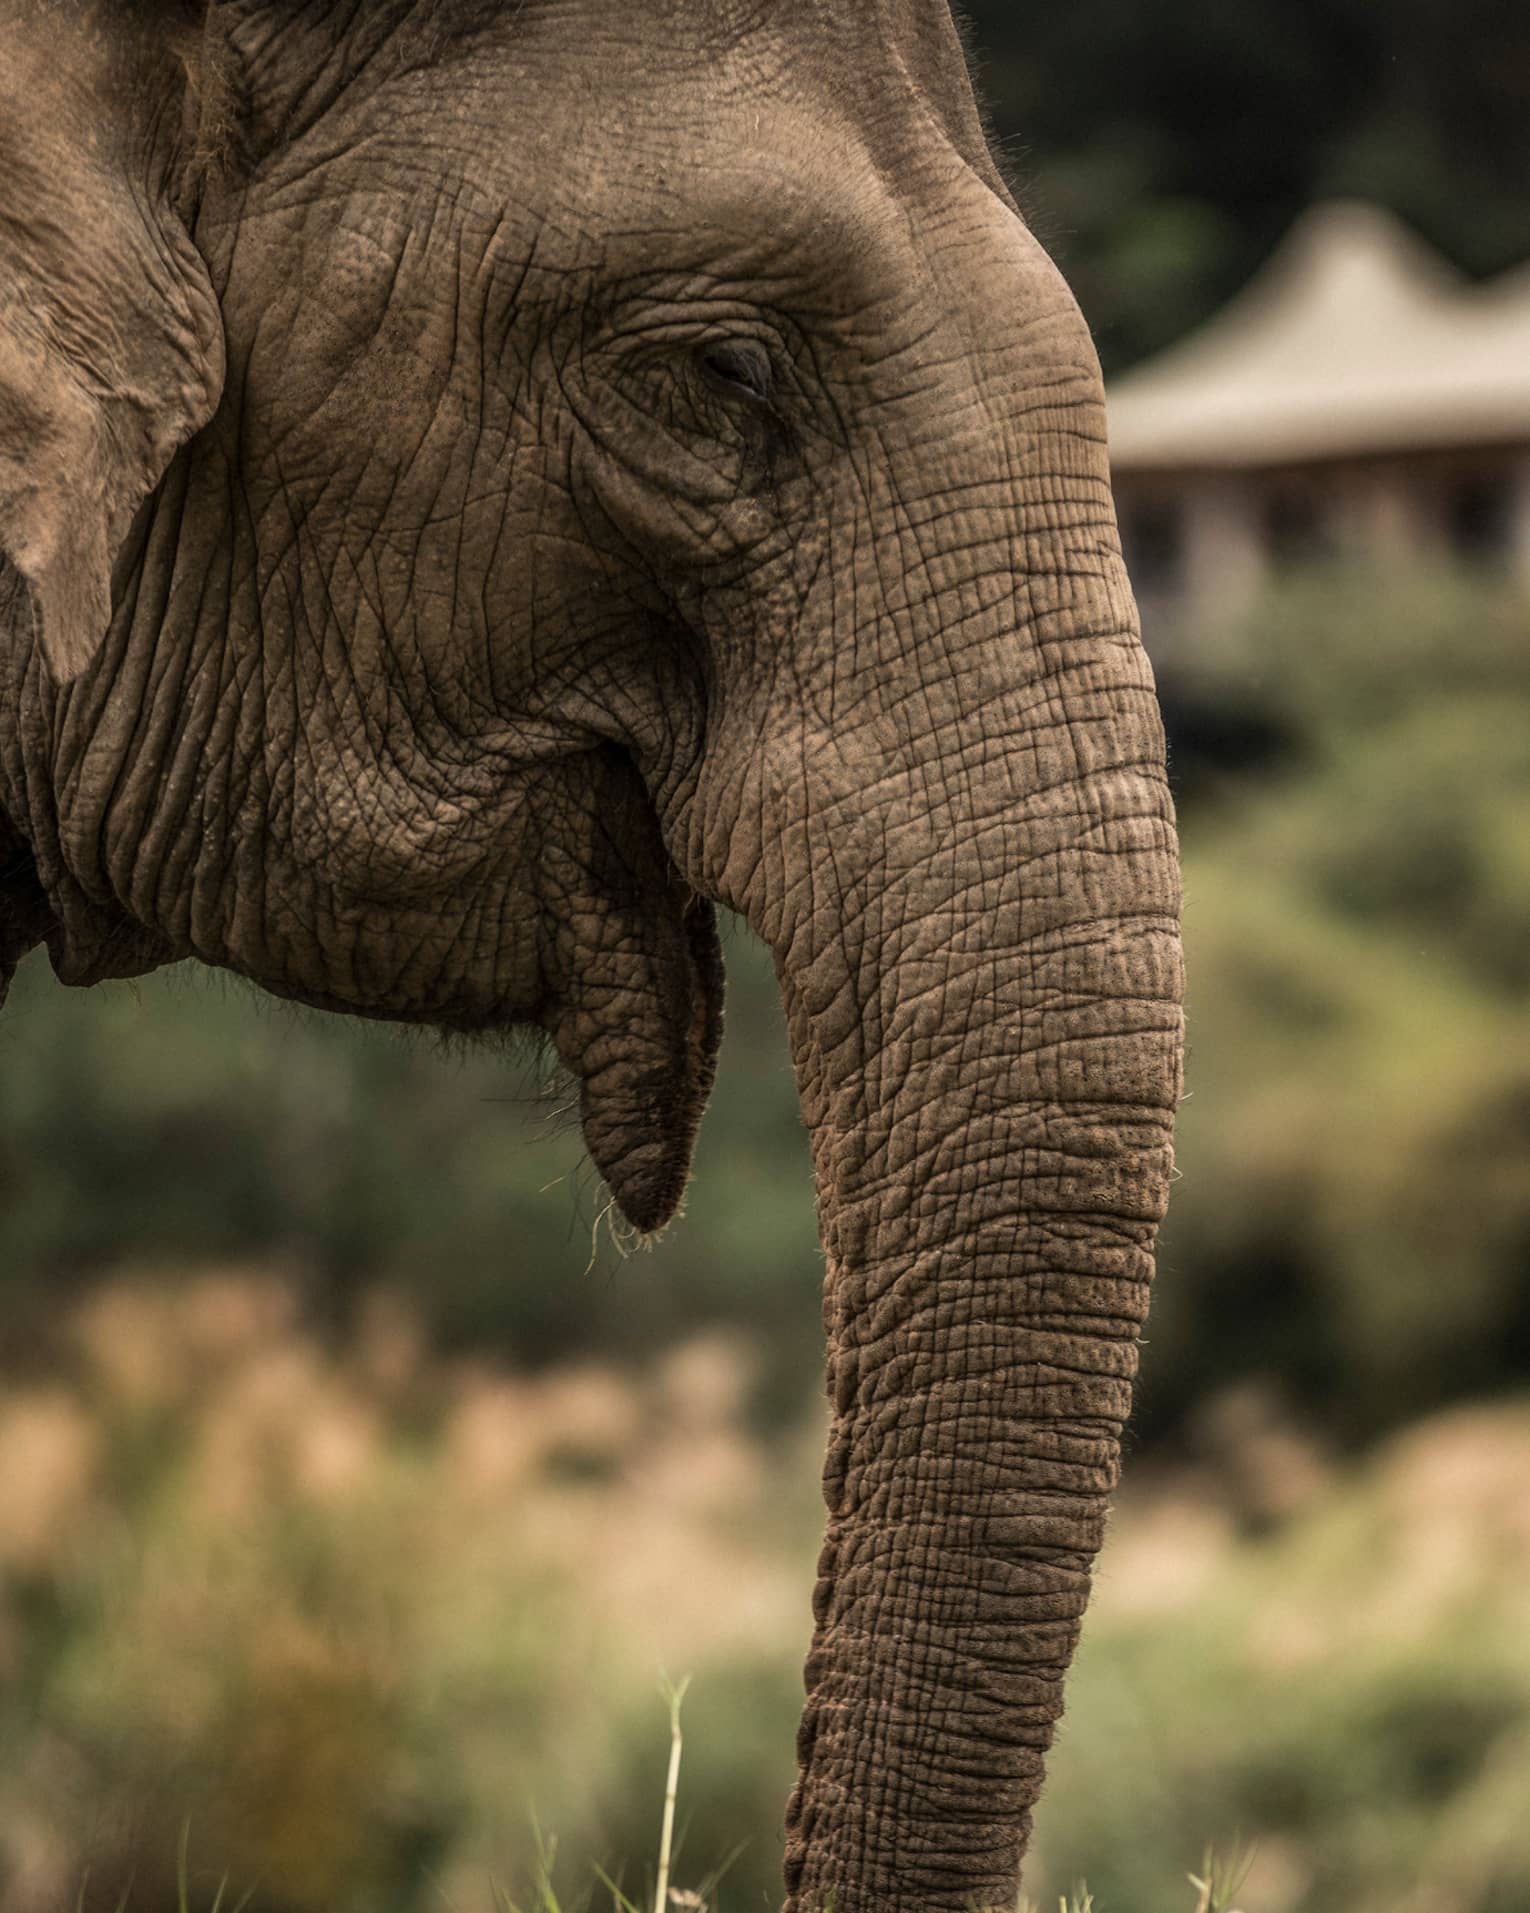 Side view of elephant head, ears, trunk